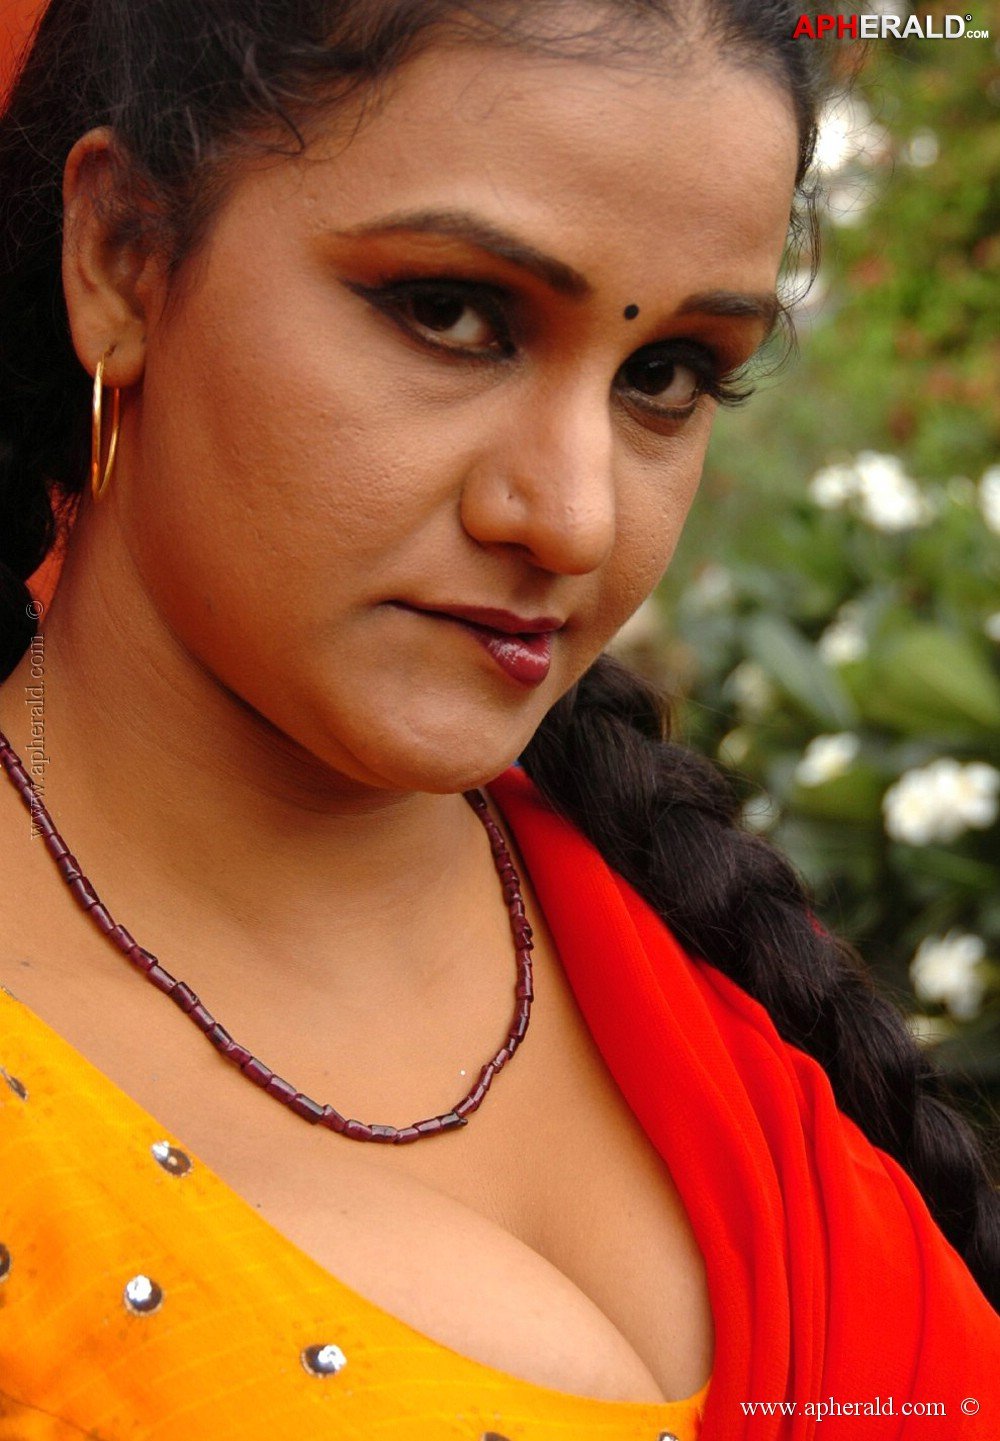 Telugu Actress Hot Photos